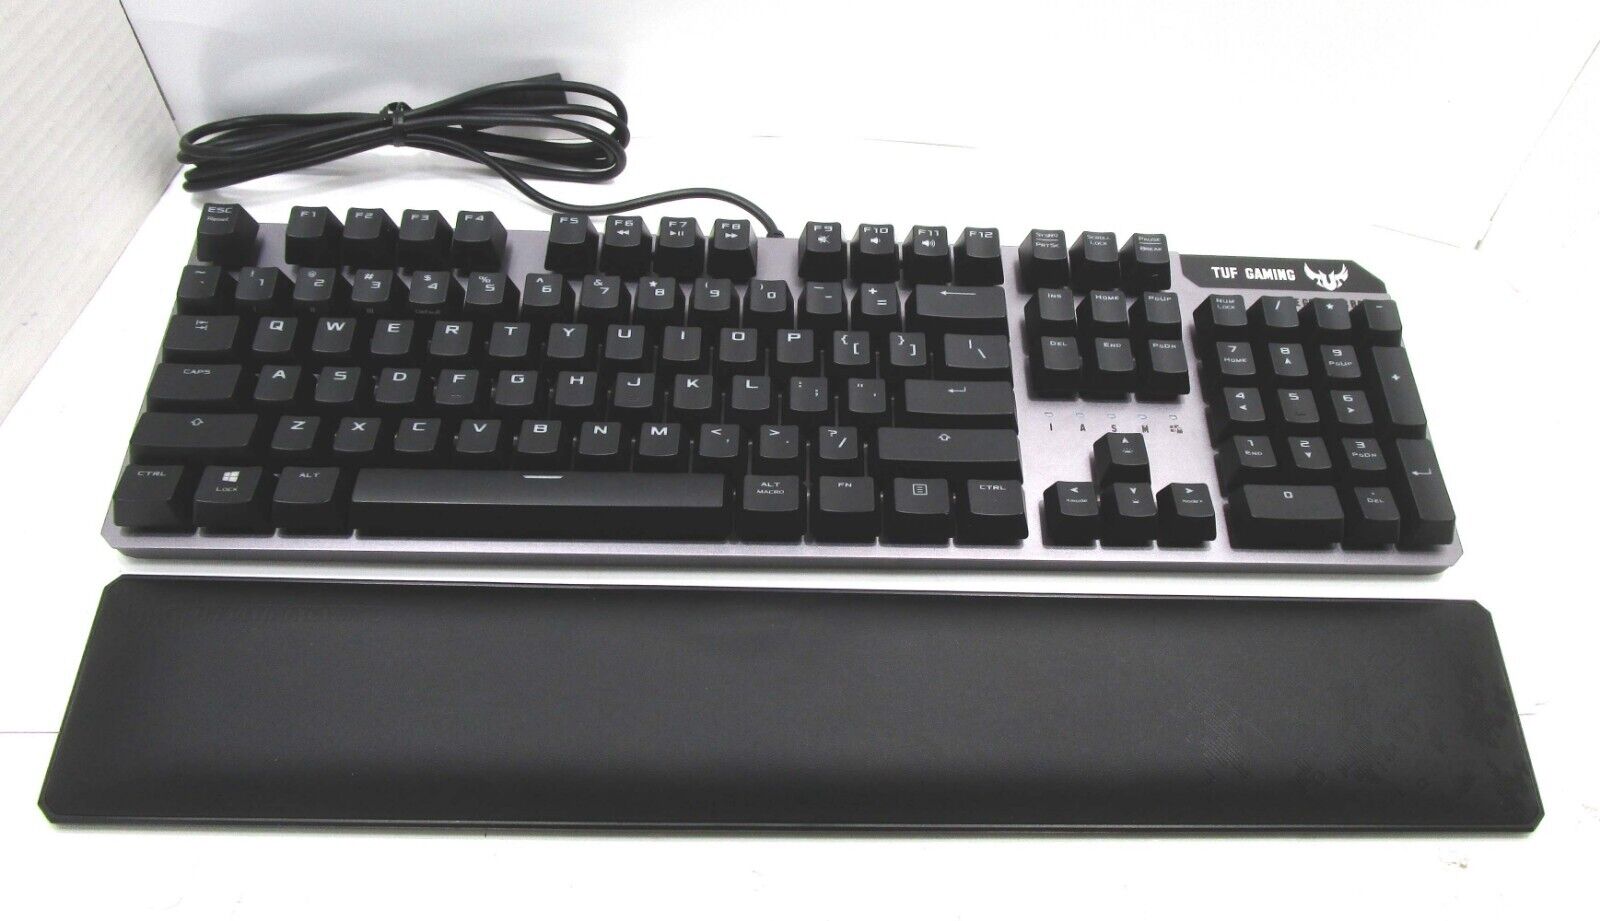 ASUS TUF GAMING K7 Optical Mech USB Gaming Keyboard with Aura Sync Lighting